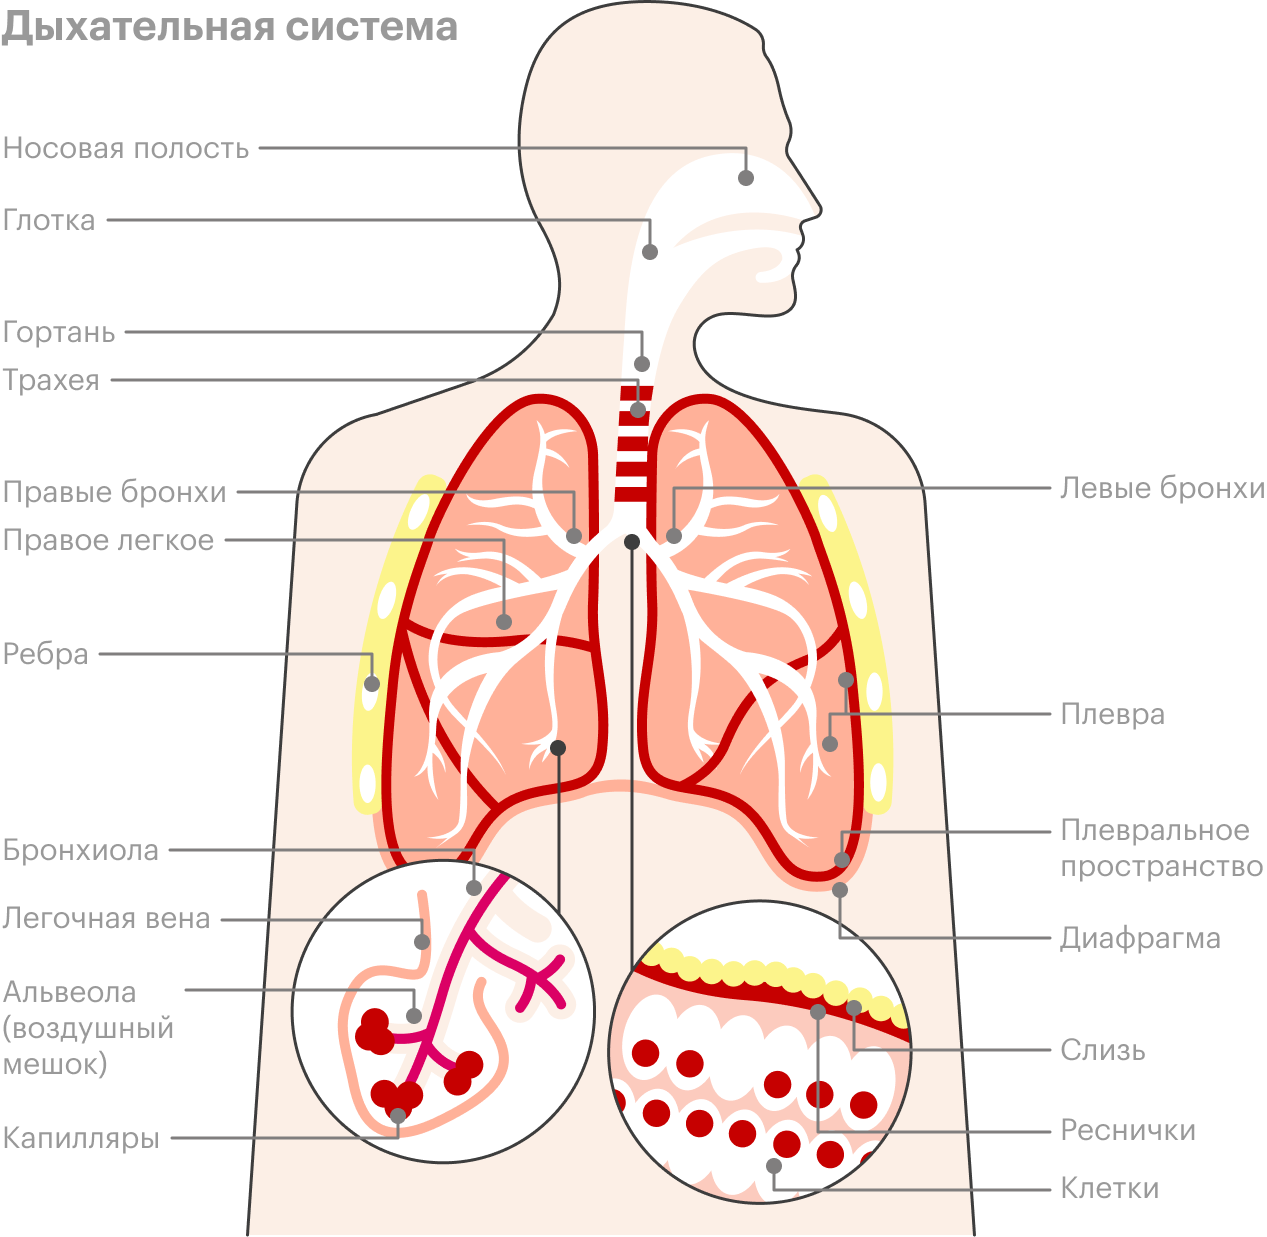 Путь воздуха начинается в носу и заканчивается в альвеолах легких, где и происходит газообмен. Источник: American Lung Association